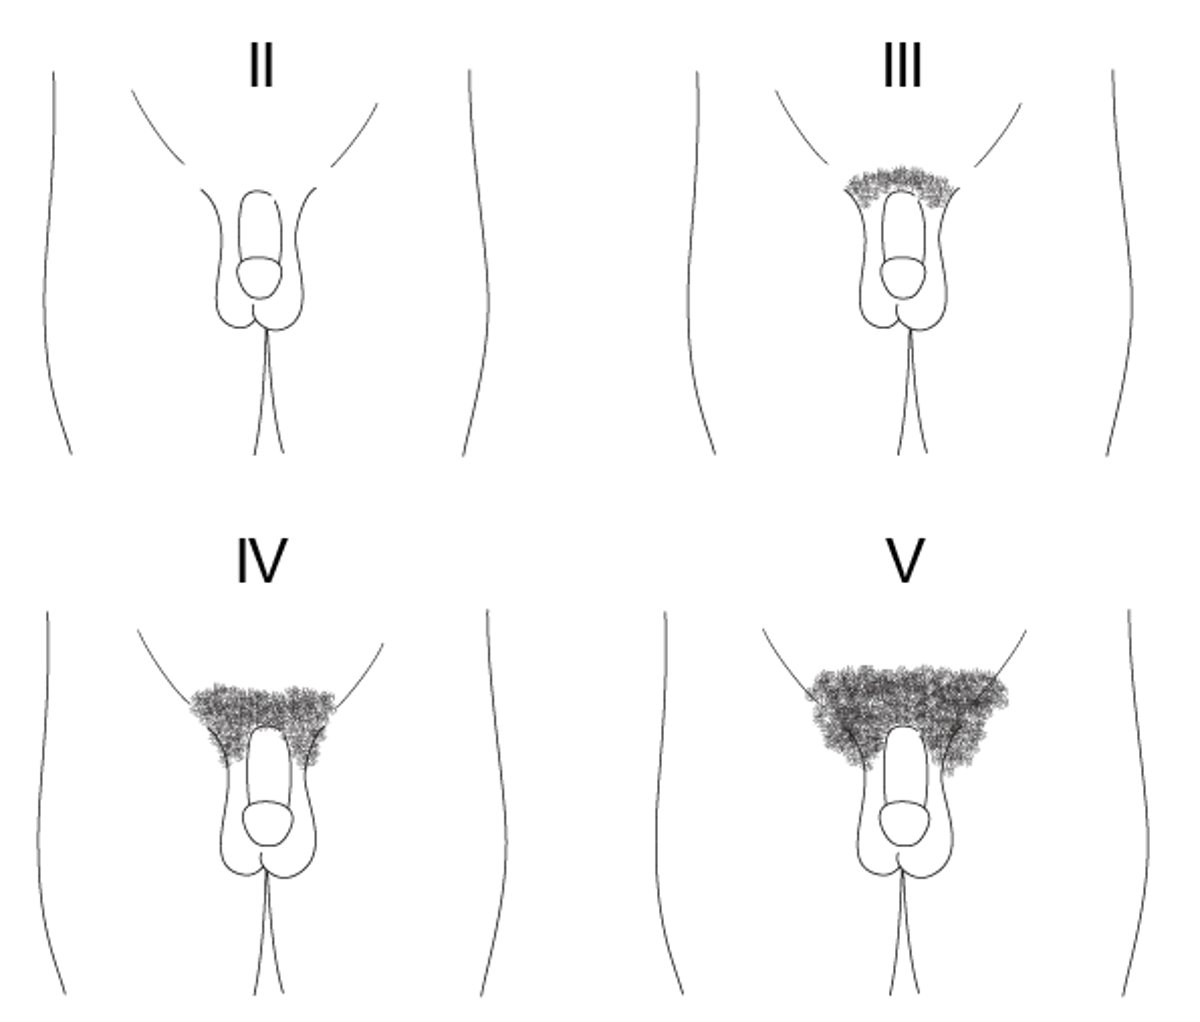 Rappresentazione schematica degli stadi di Tanner, da II a V, dello sviluppo dei peli pubici nei ragazzi